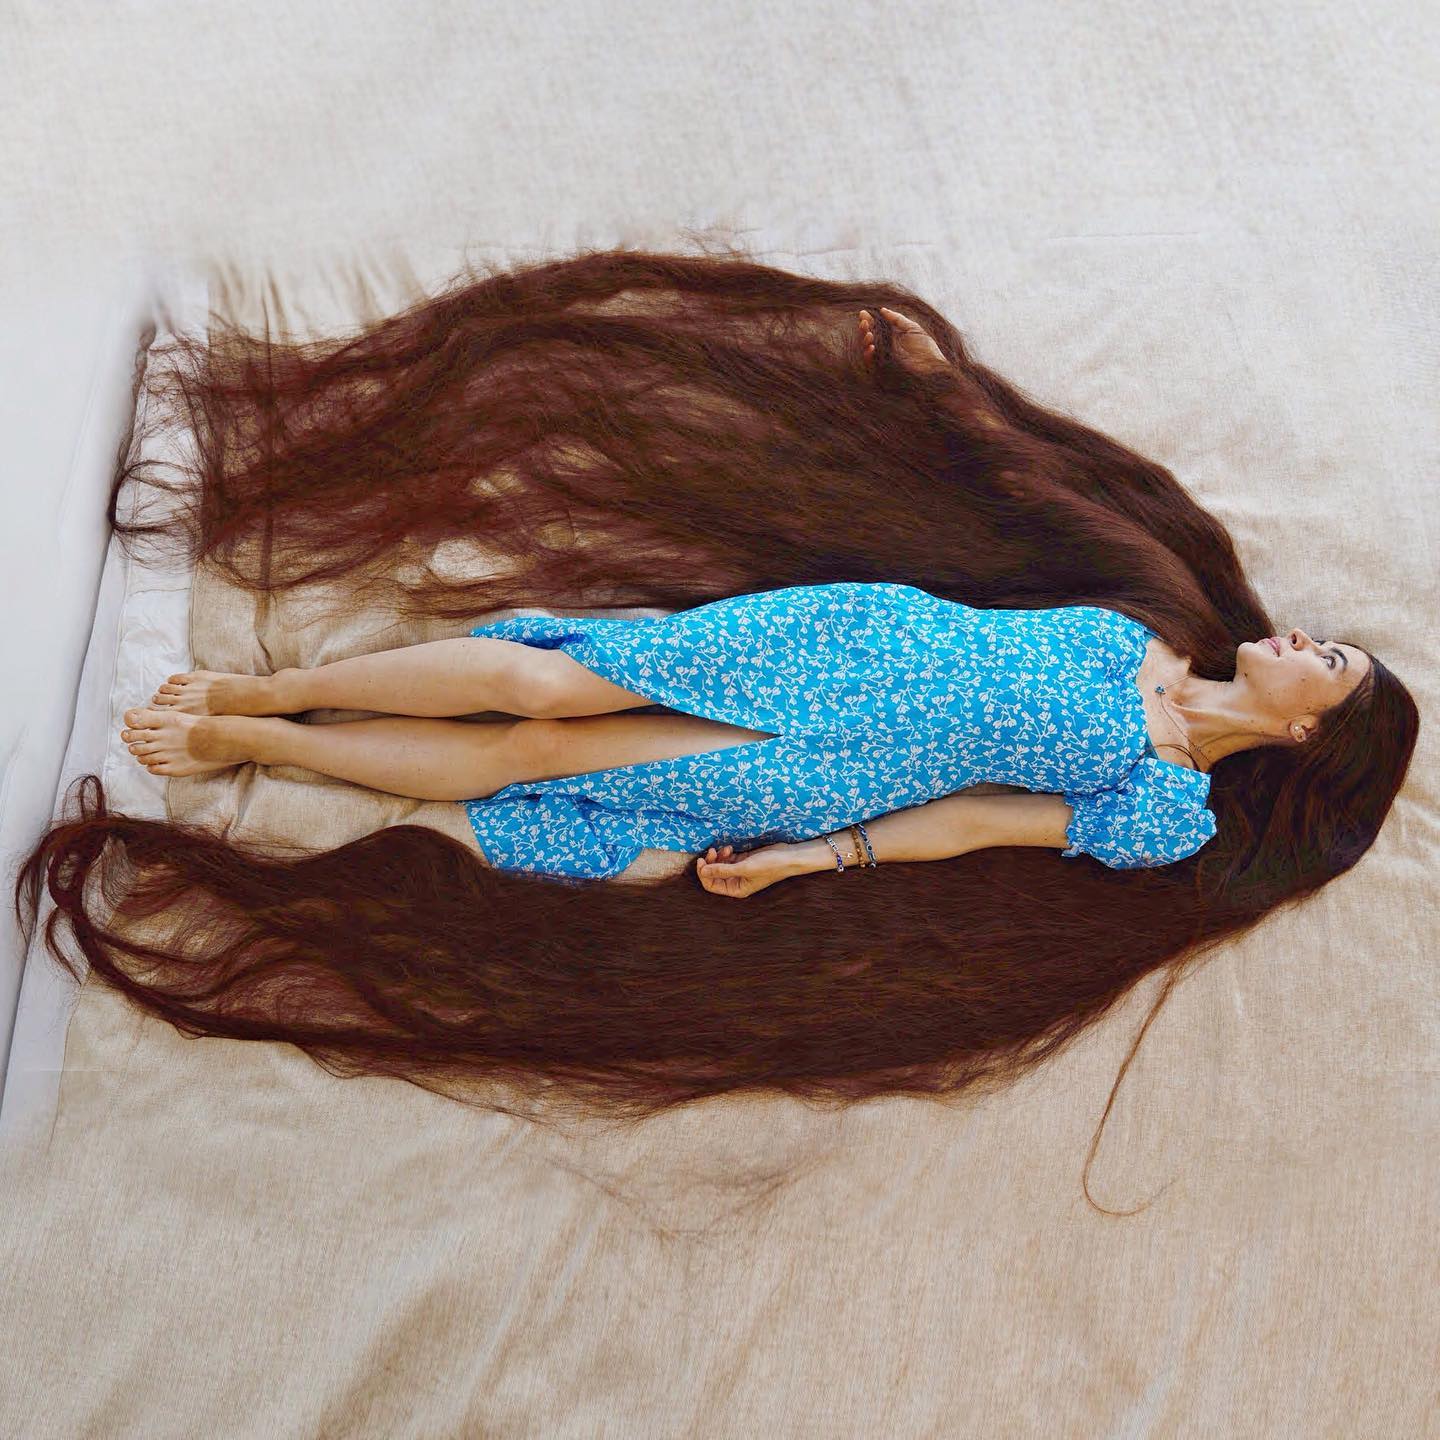 Українка потрапила до Книги рекордів Гіннесса за найдовше волосся у світі